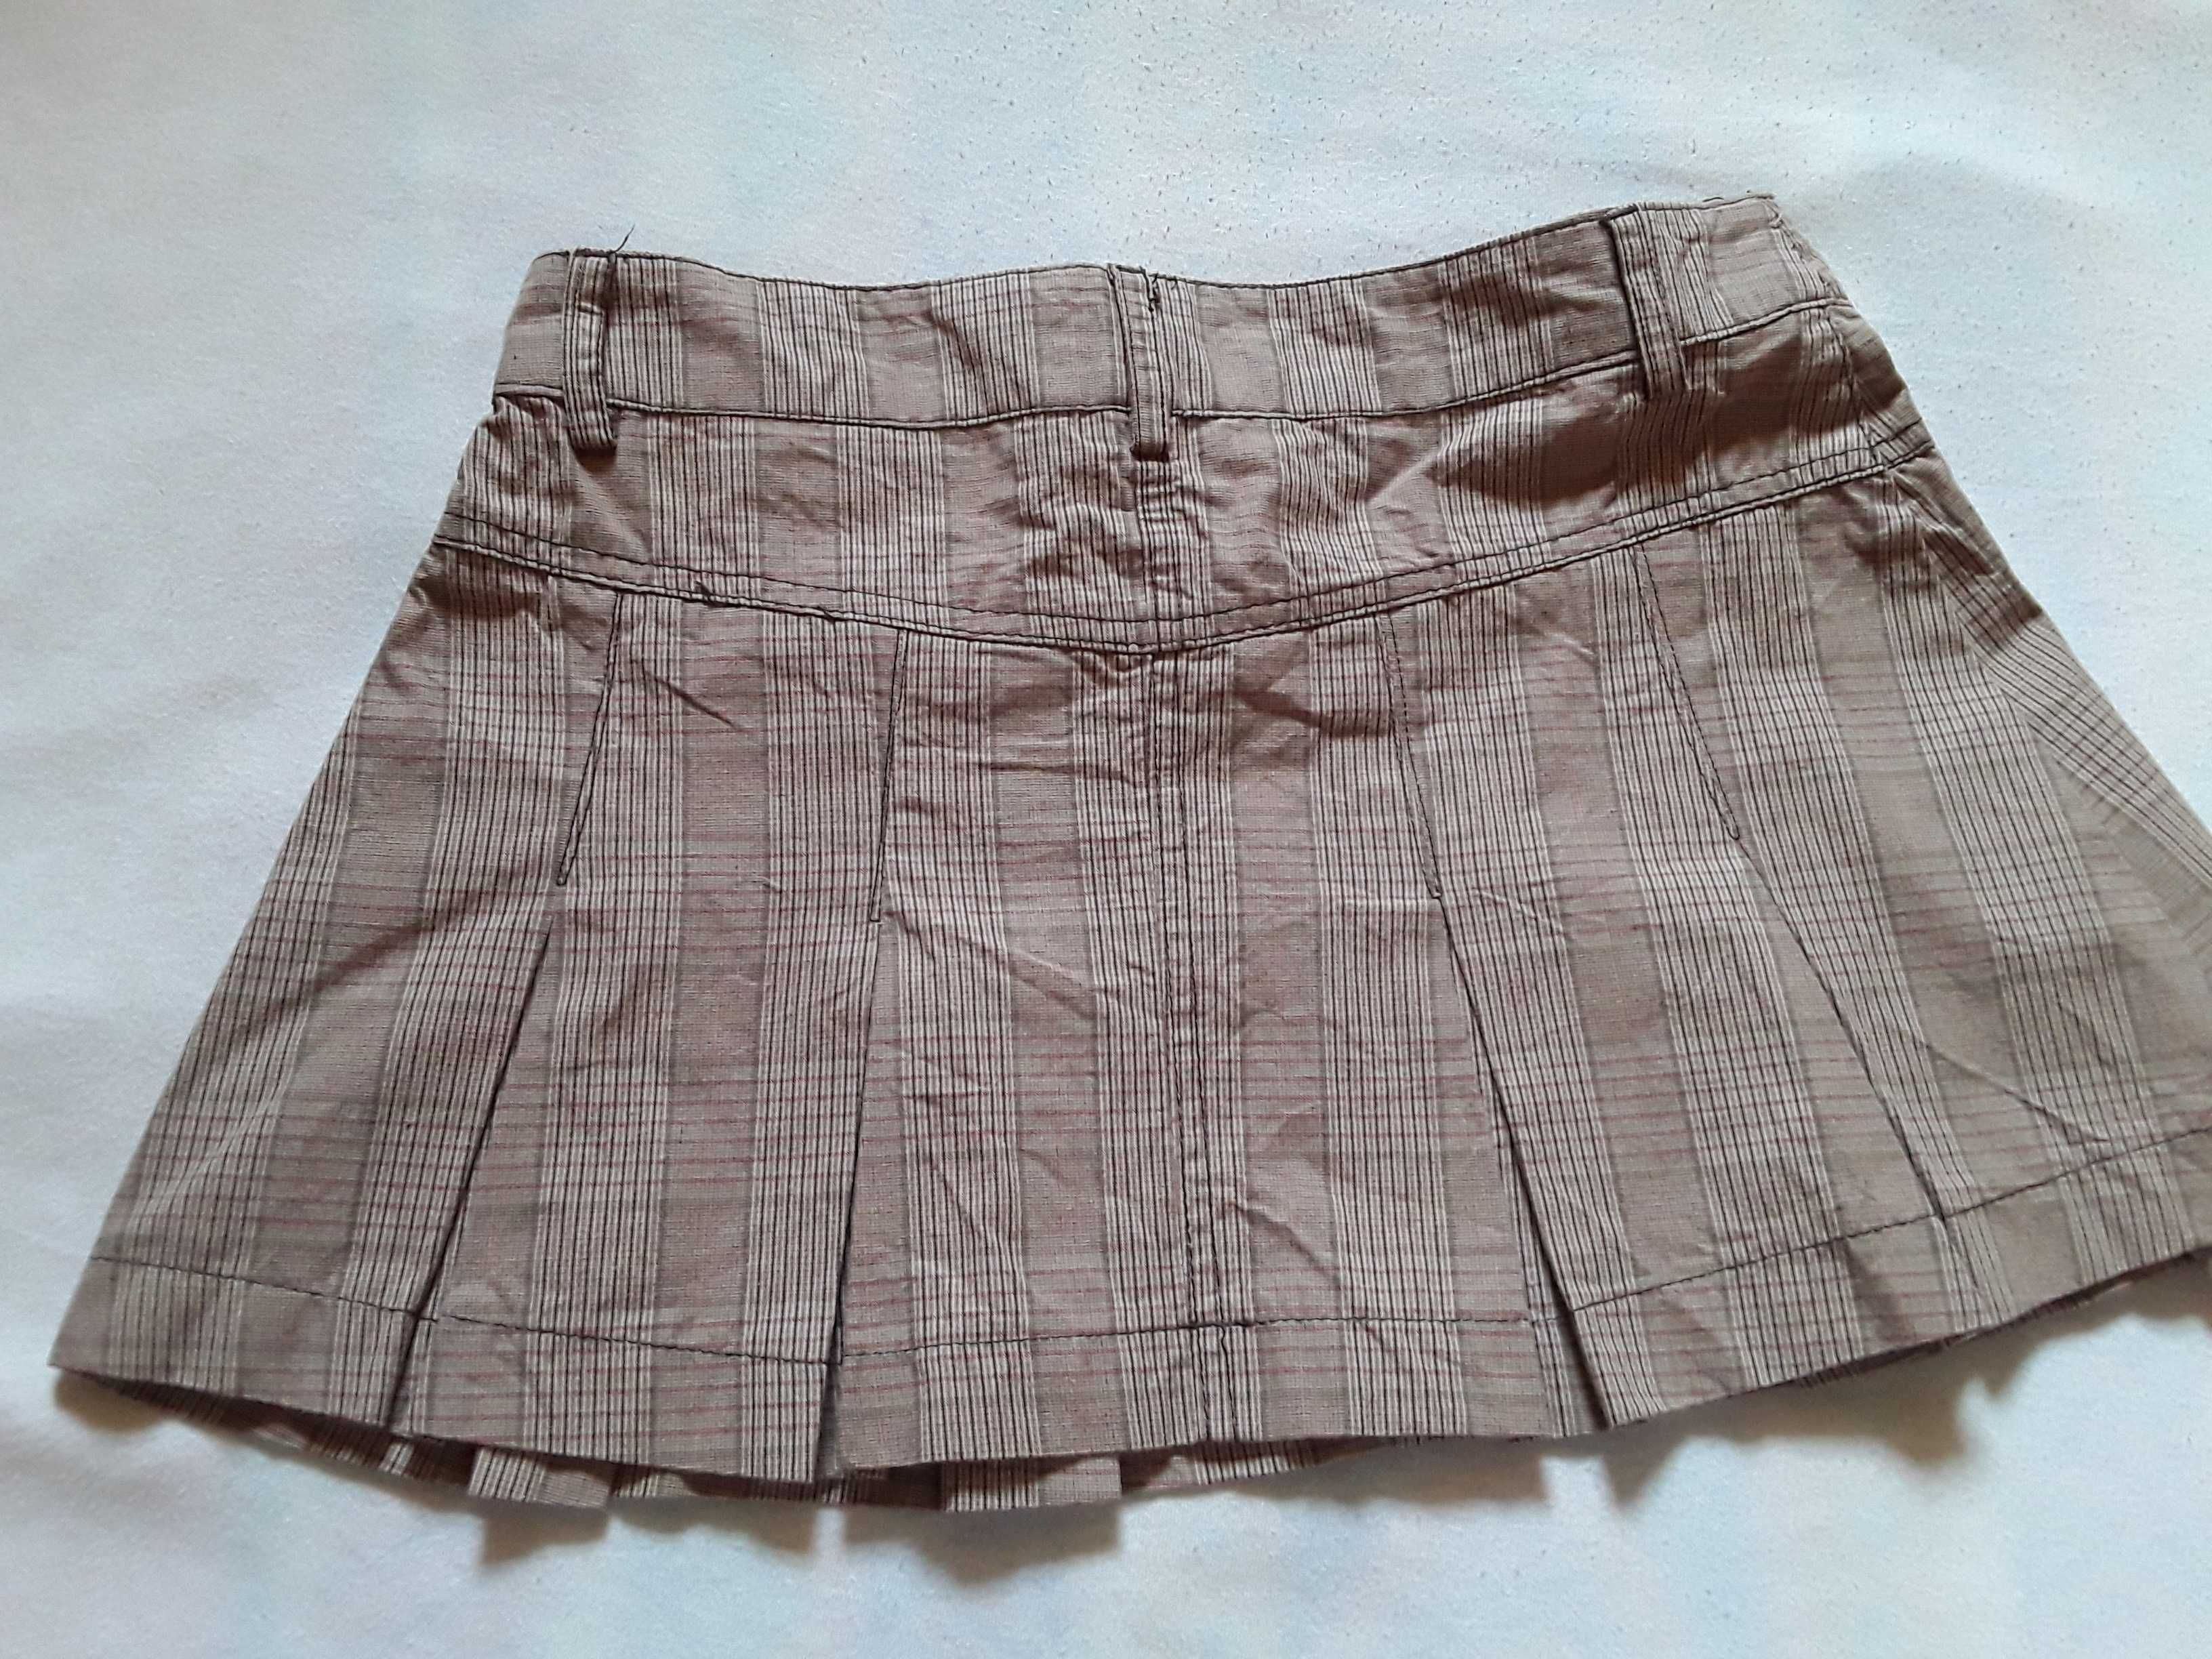 Spódnica dziewczęca beżowa kratka,  biodrówka 158-164 cm idealna